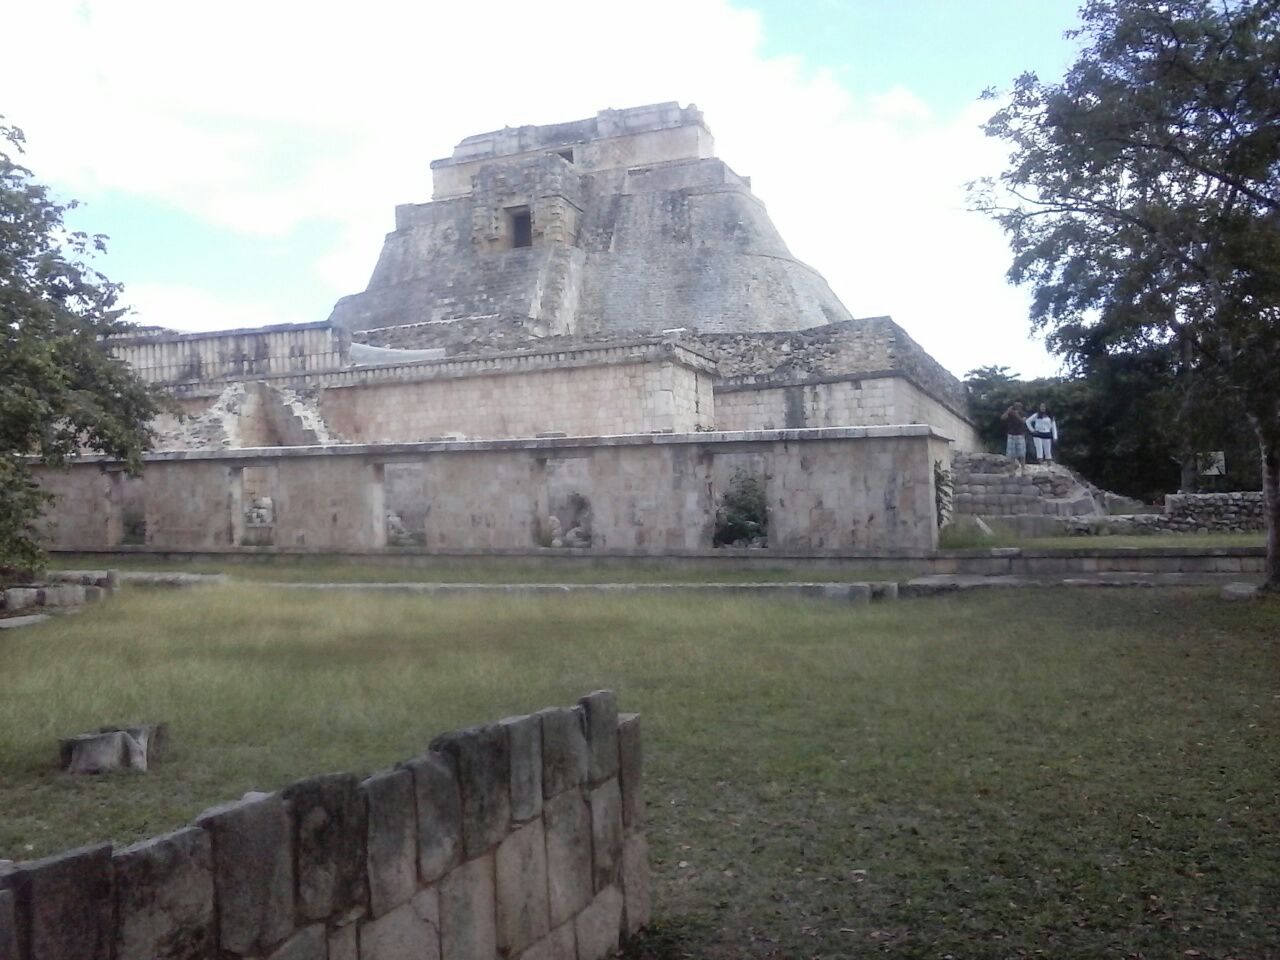 Uxmal, tours en zonas arqueológicas mayas